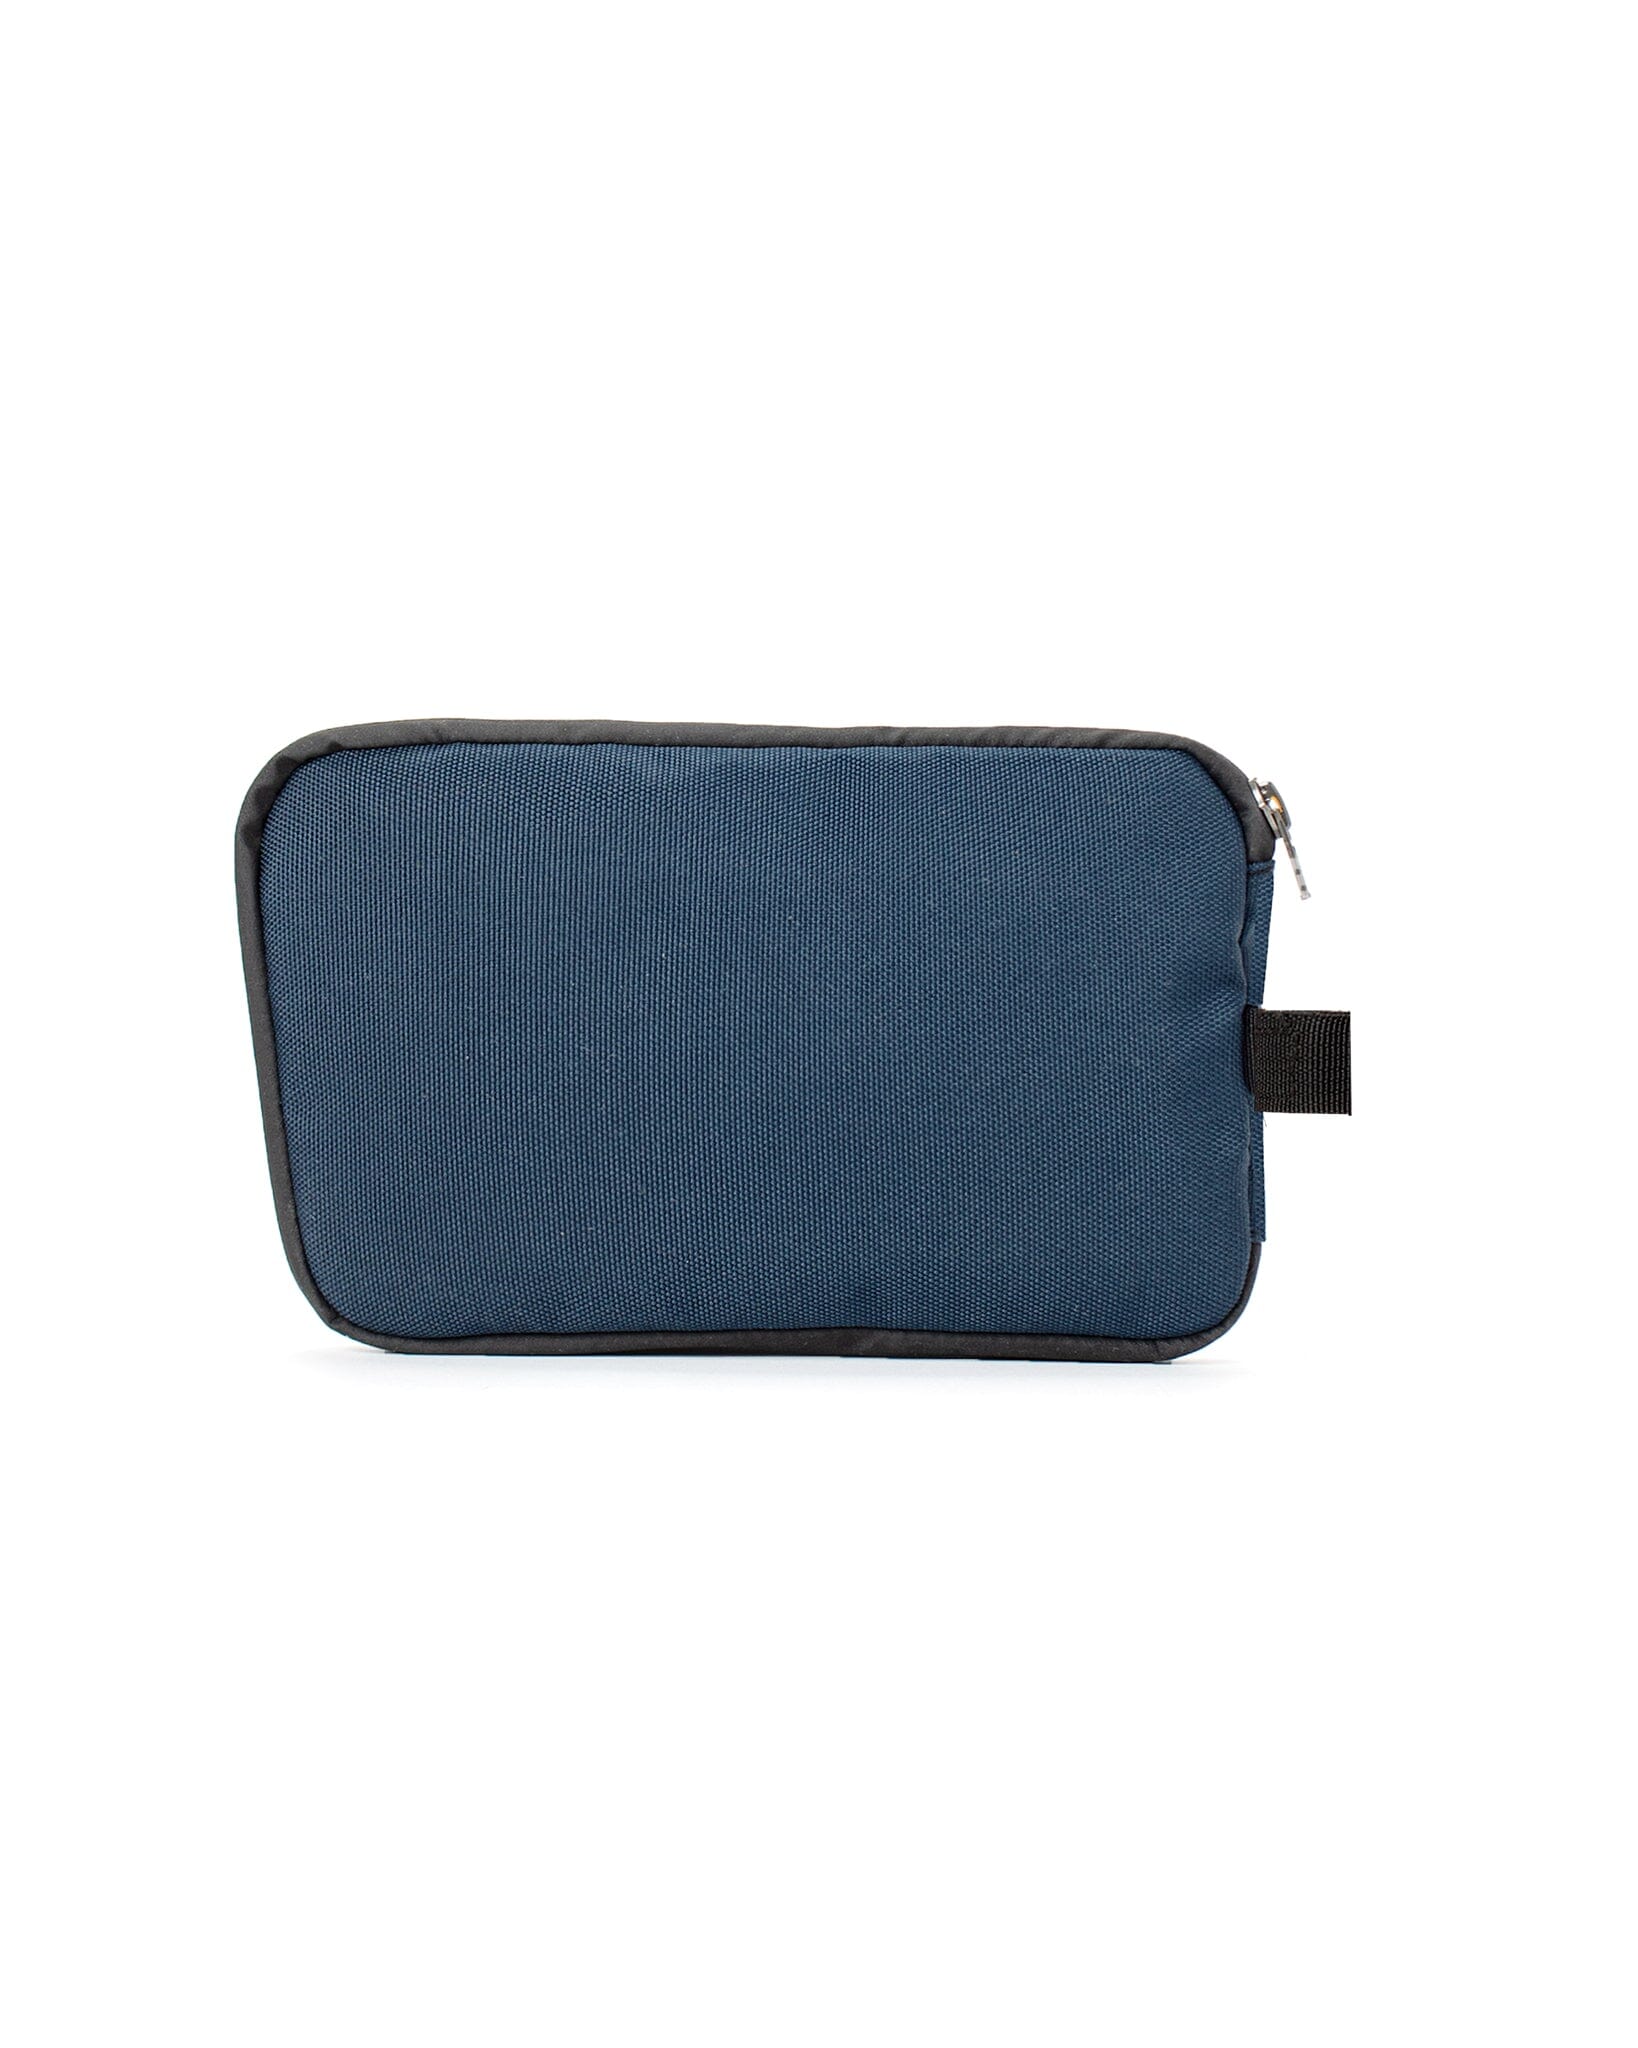 AUX™ Pocket - Lunar Blue Cordura Bag bolstr   